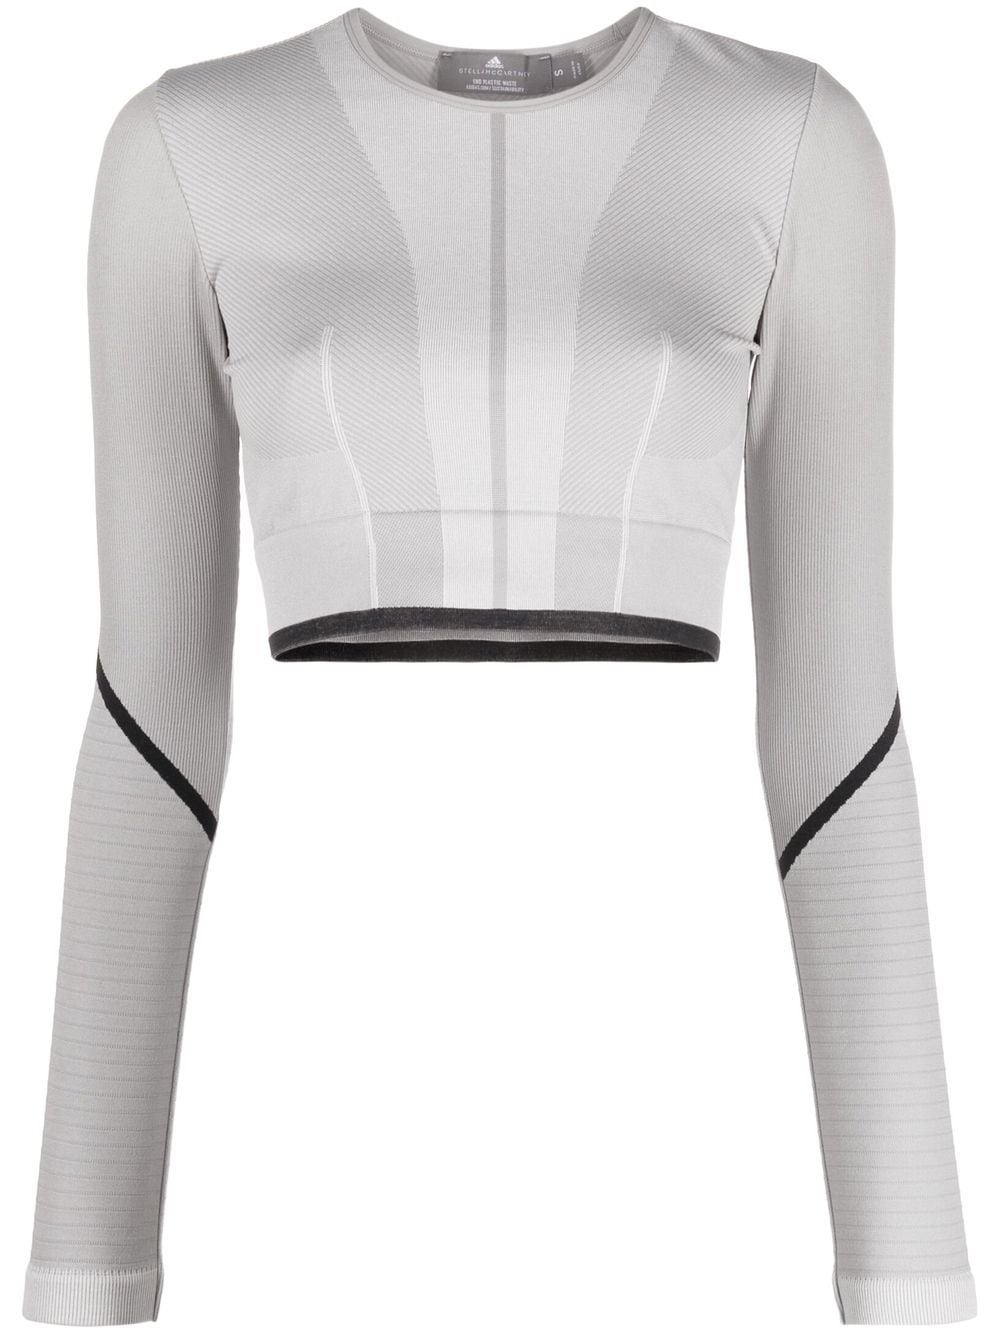 adidas by Stella McCartney TrueStrength long-sleeve crop top - Grey